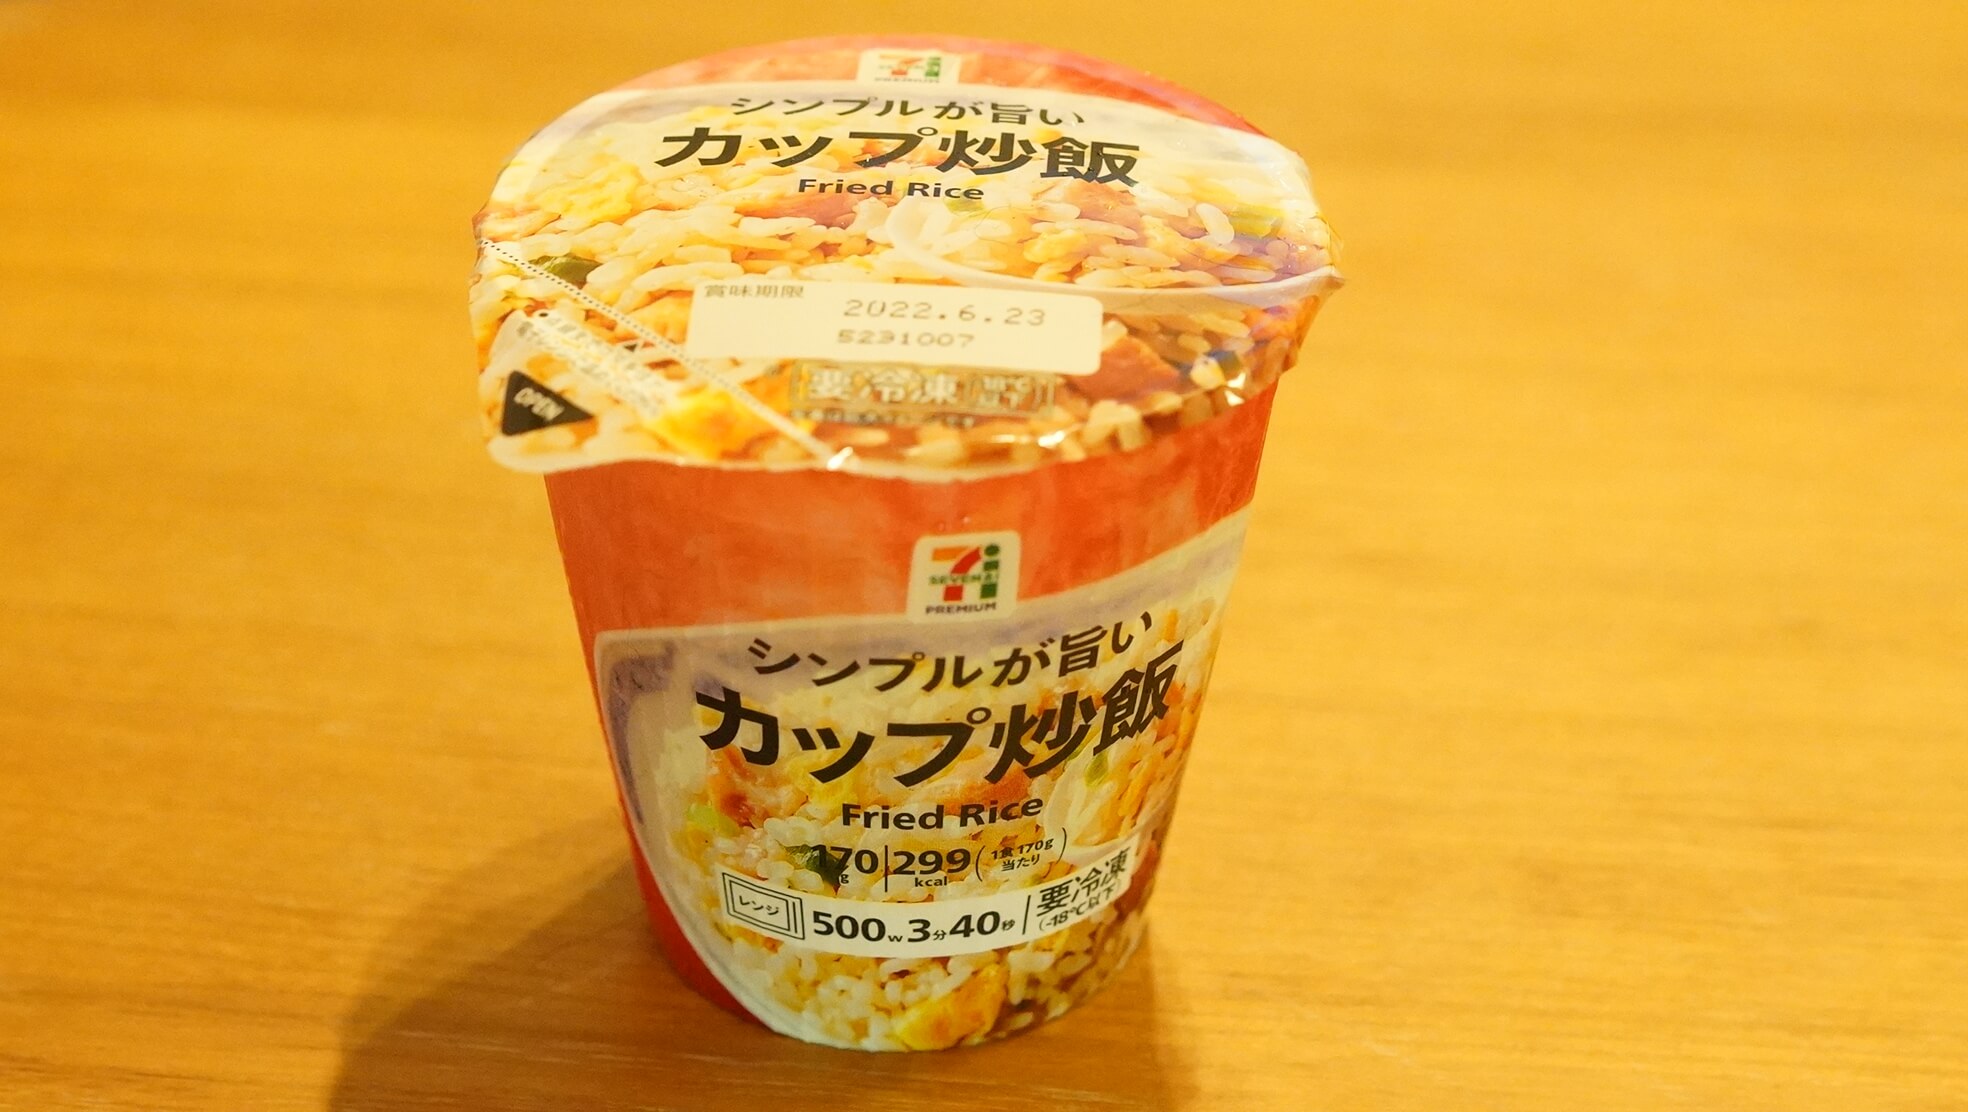 セブンイレブンのカップ型冷凍食品「シンプルで美味しい炒飯」を前から撮影した写真